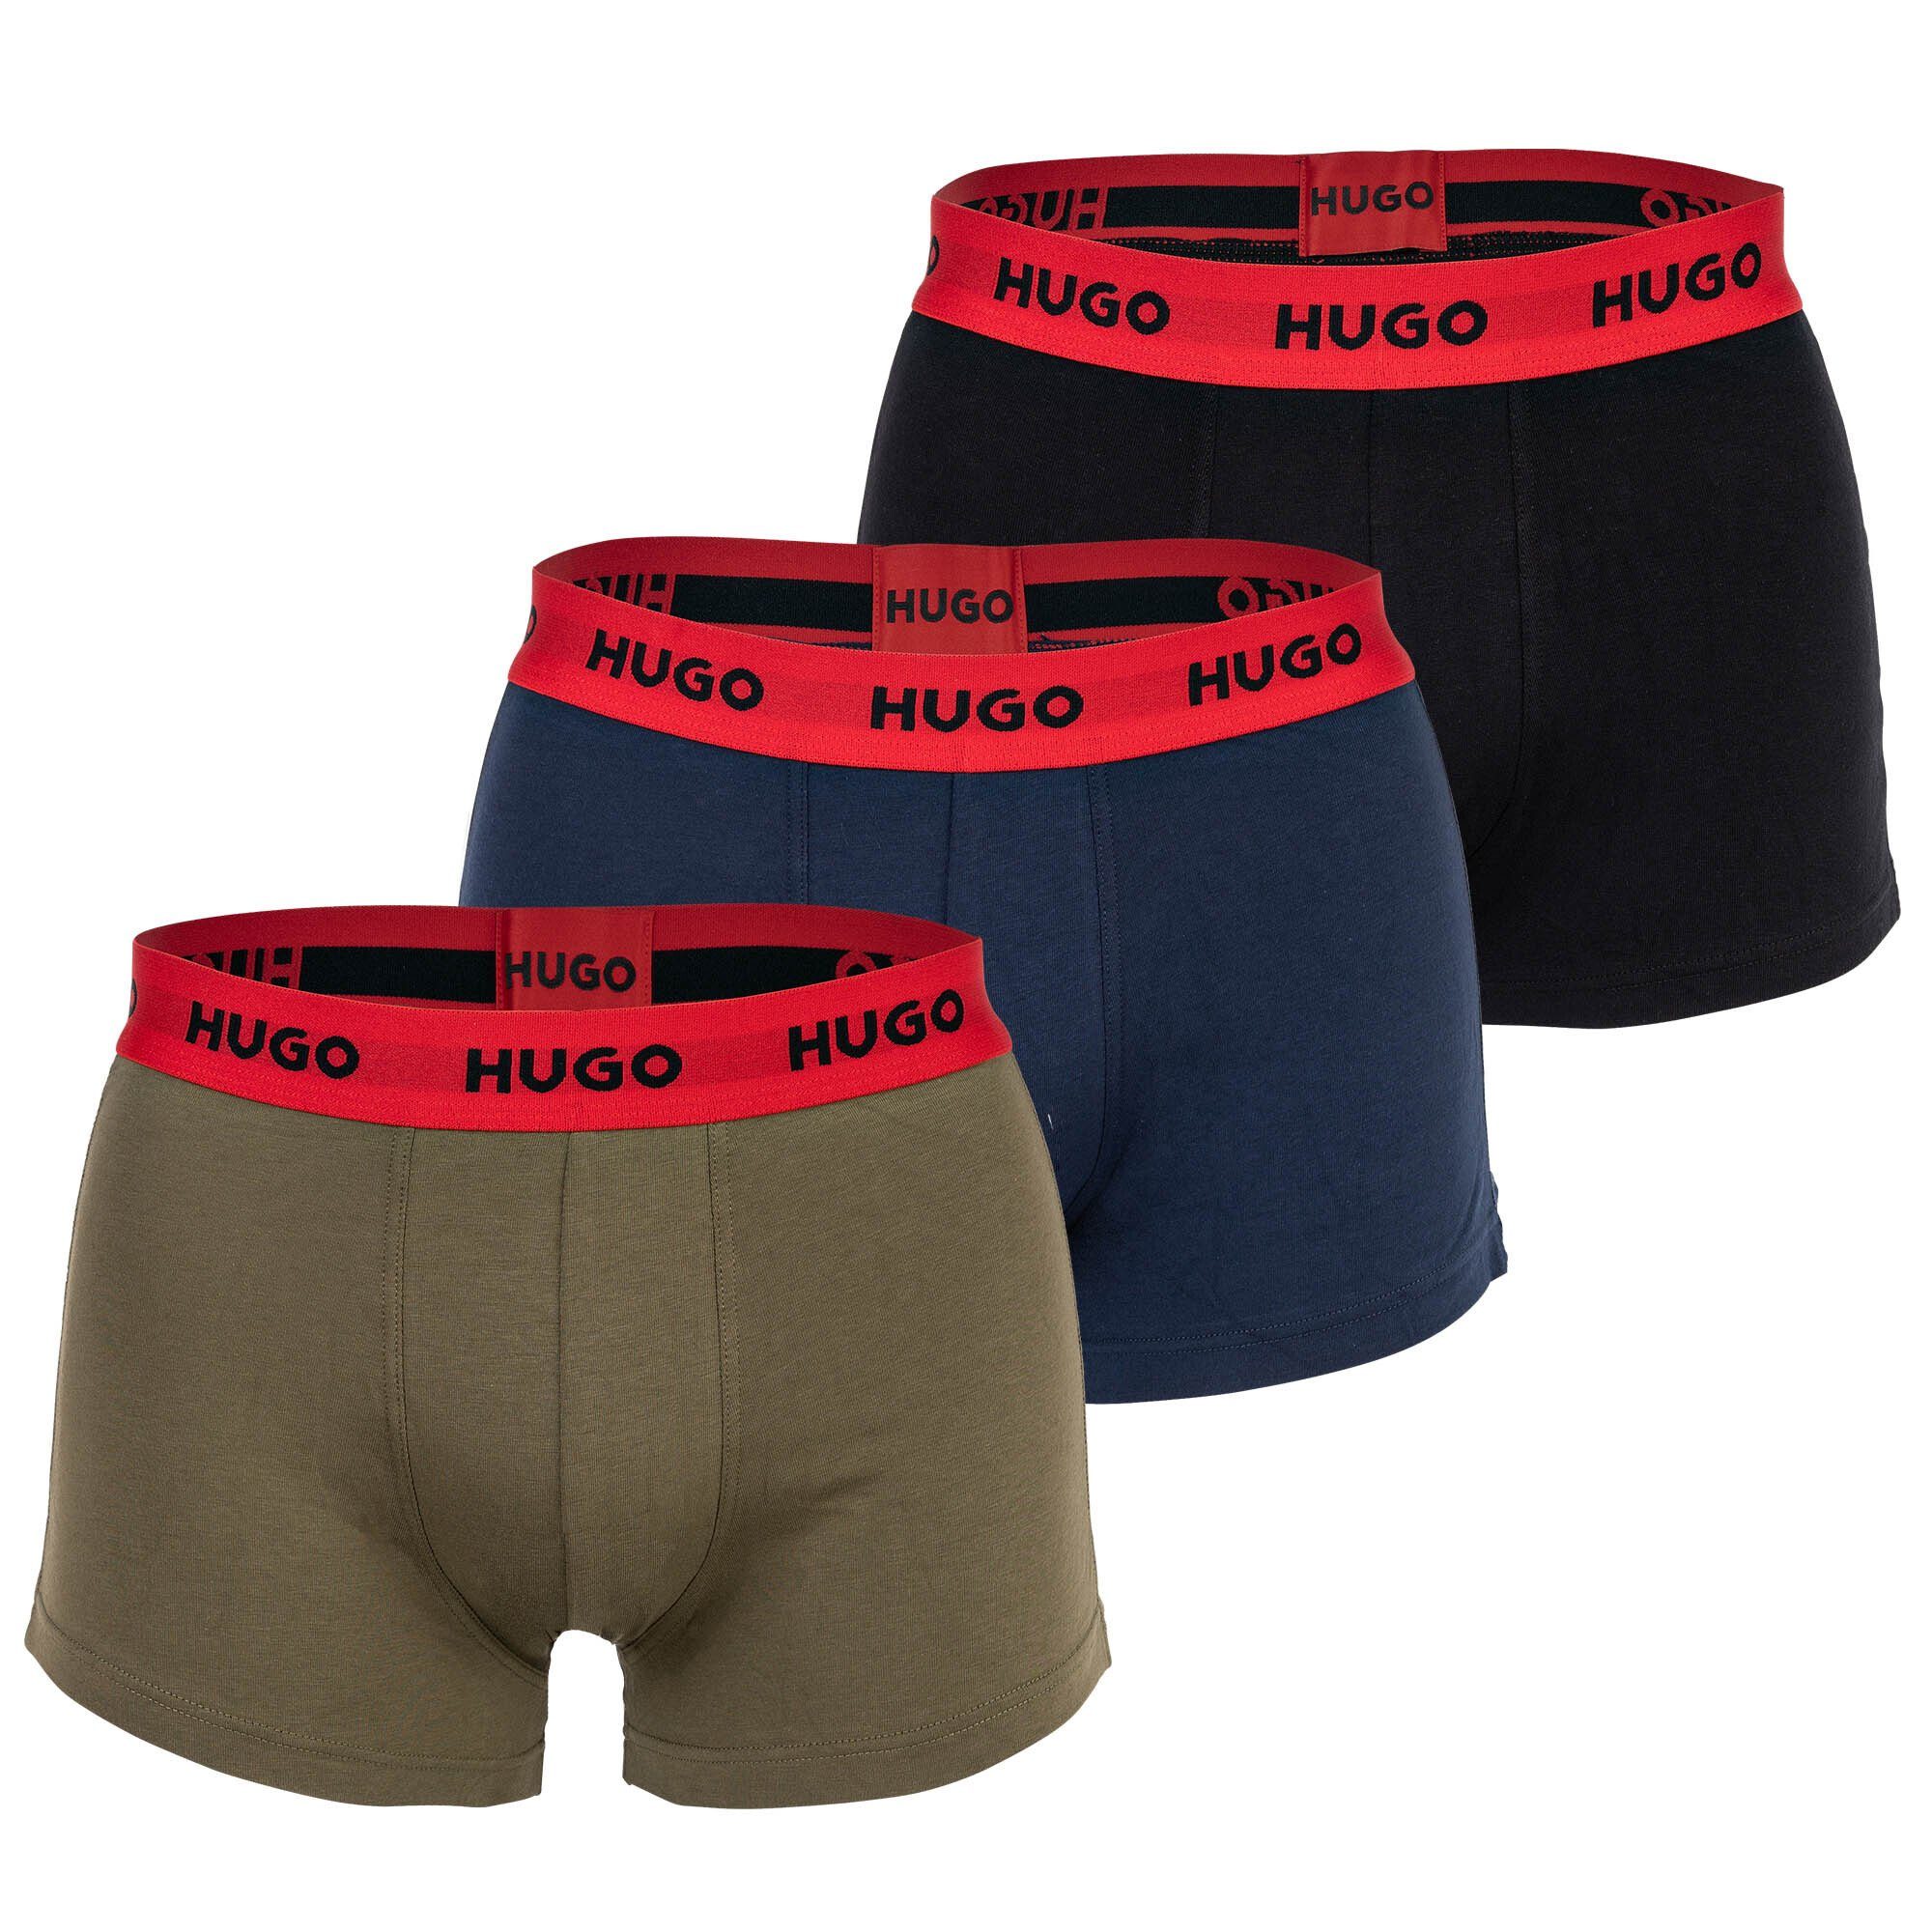 HUGO Boxer Herren Boxer Shorts, 3er Pack - Trunks Triplet Blau/Grün/Schwarz | Boxershorts